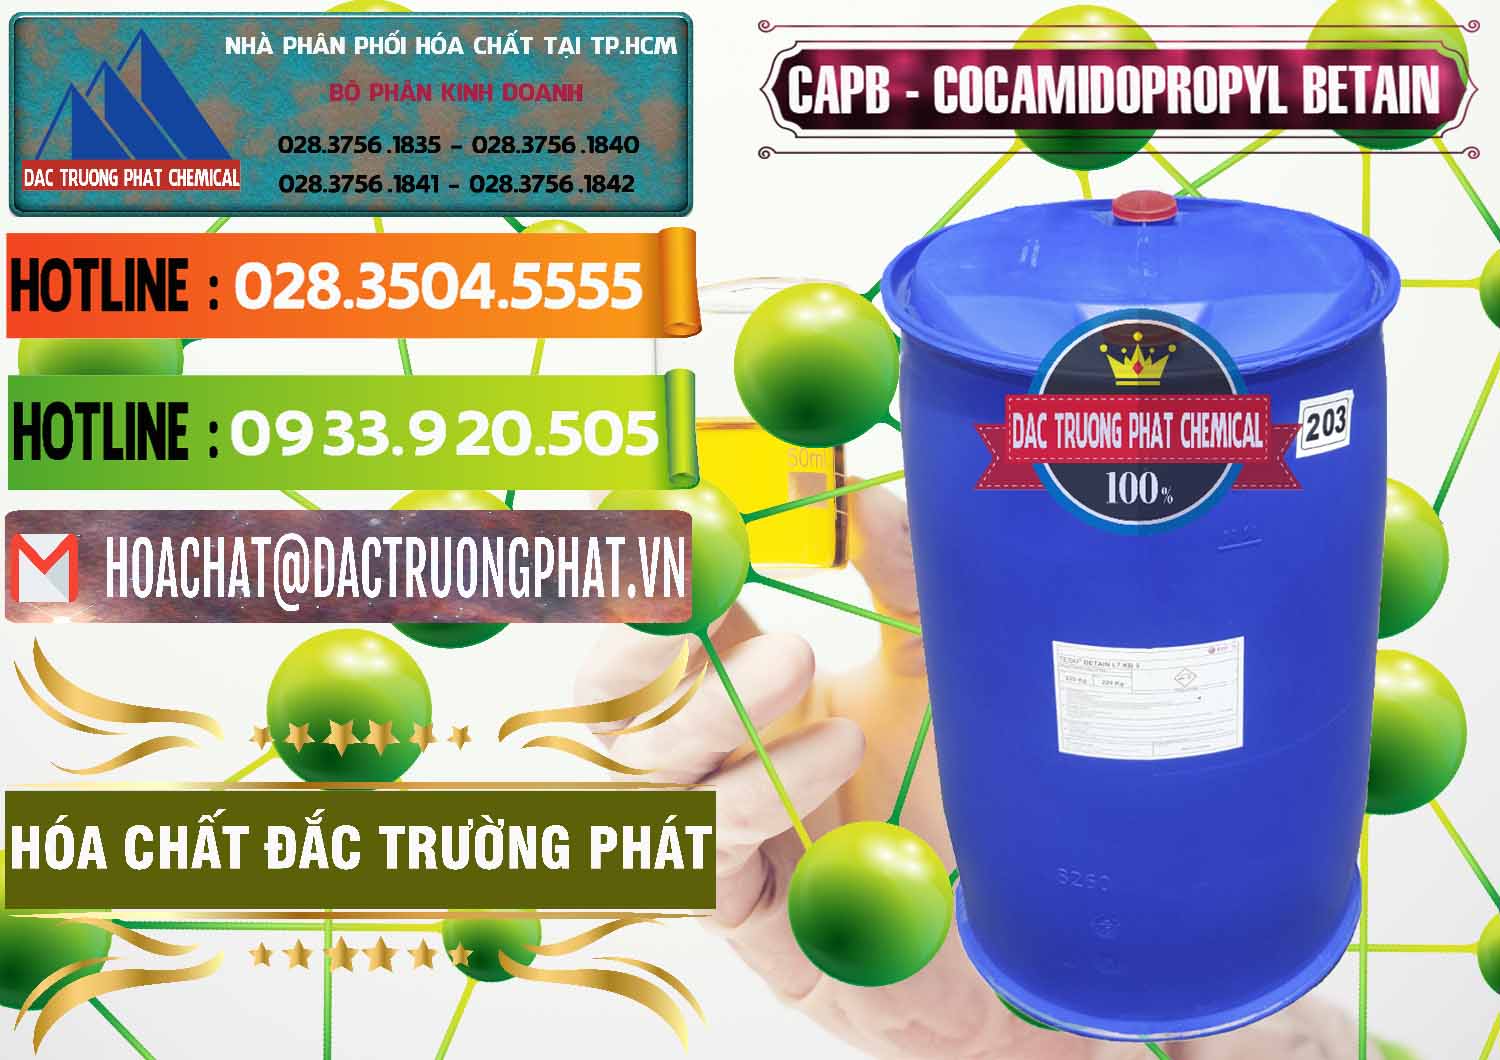 Chuyên bán _ phân phối Cocamidopropyl Betaine - CAPB Tego Indonesia - 0327 - Cung cấp - nhập khẩu hóa chất tại TP.HCM - cungcaphoachat.com.vn